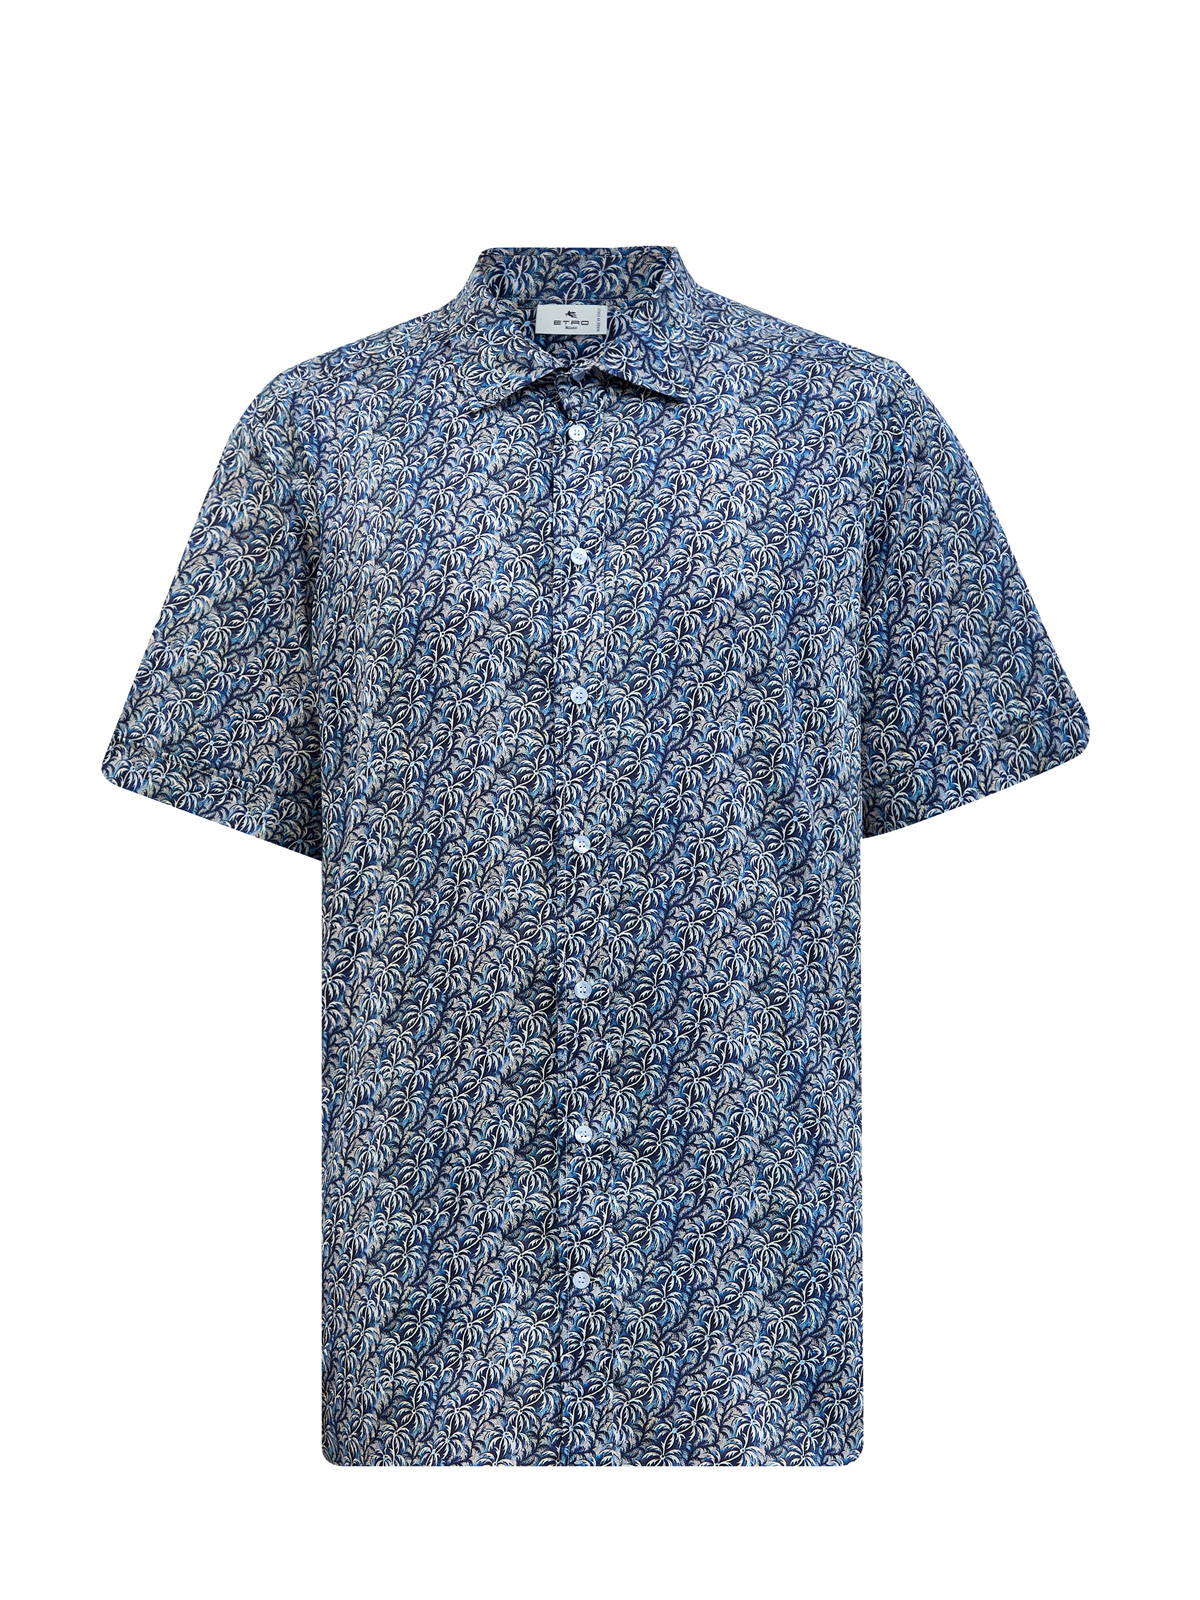 Хлопковая рубашка в стиле leisure c набивным паттерном ETRO, цвет синий, размер 60;62;64